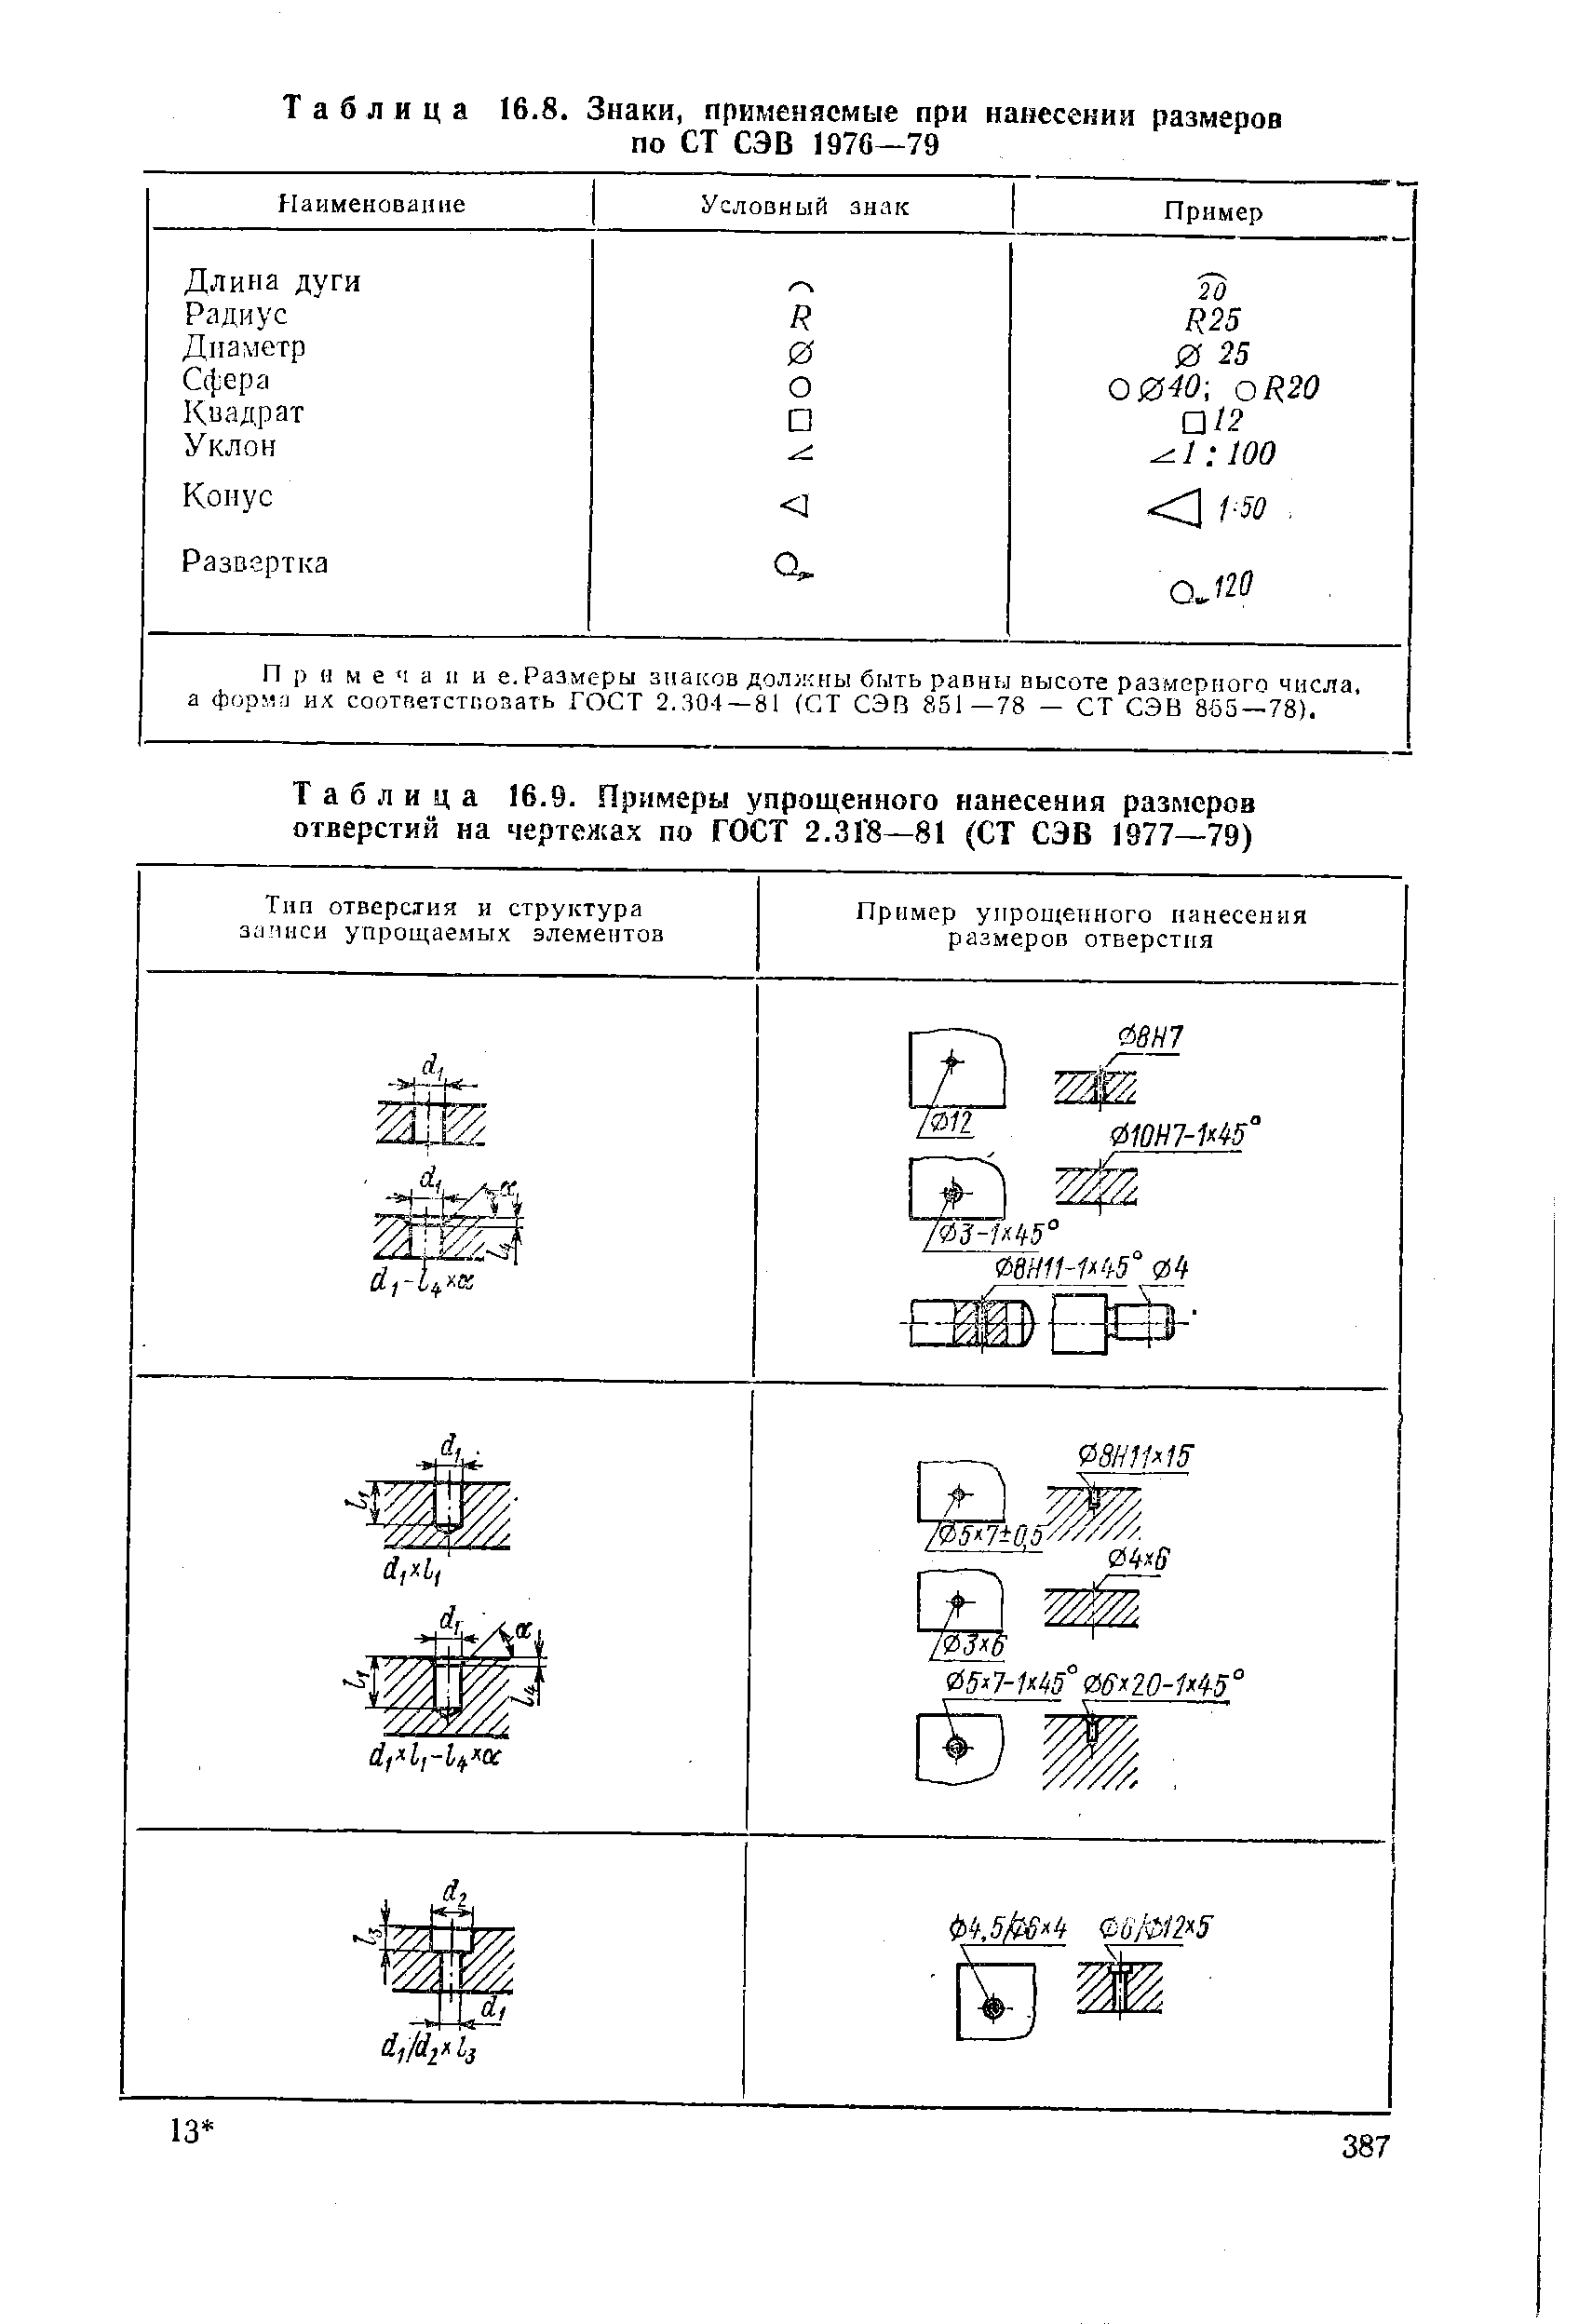 Таблица 16.9. Примеры упрощенного нанесения размеров отверстий на чертежах по ГОСТ 2.3Г8—81 (СТ СЭВ 1977—79)
